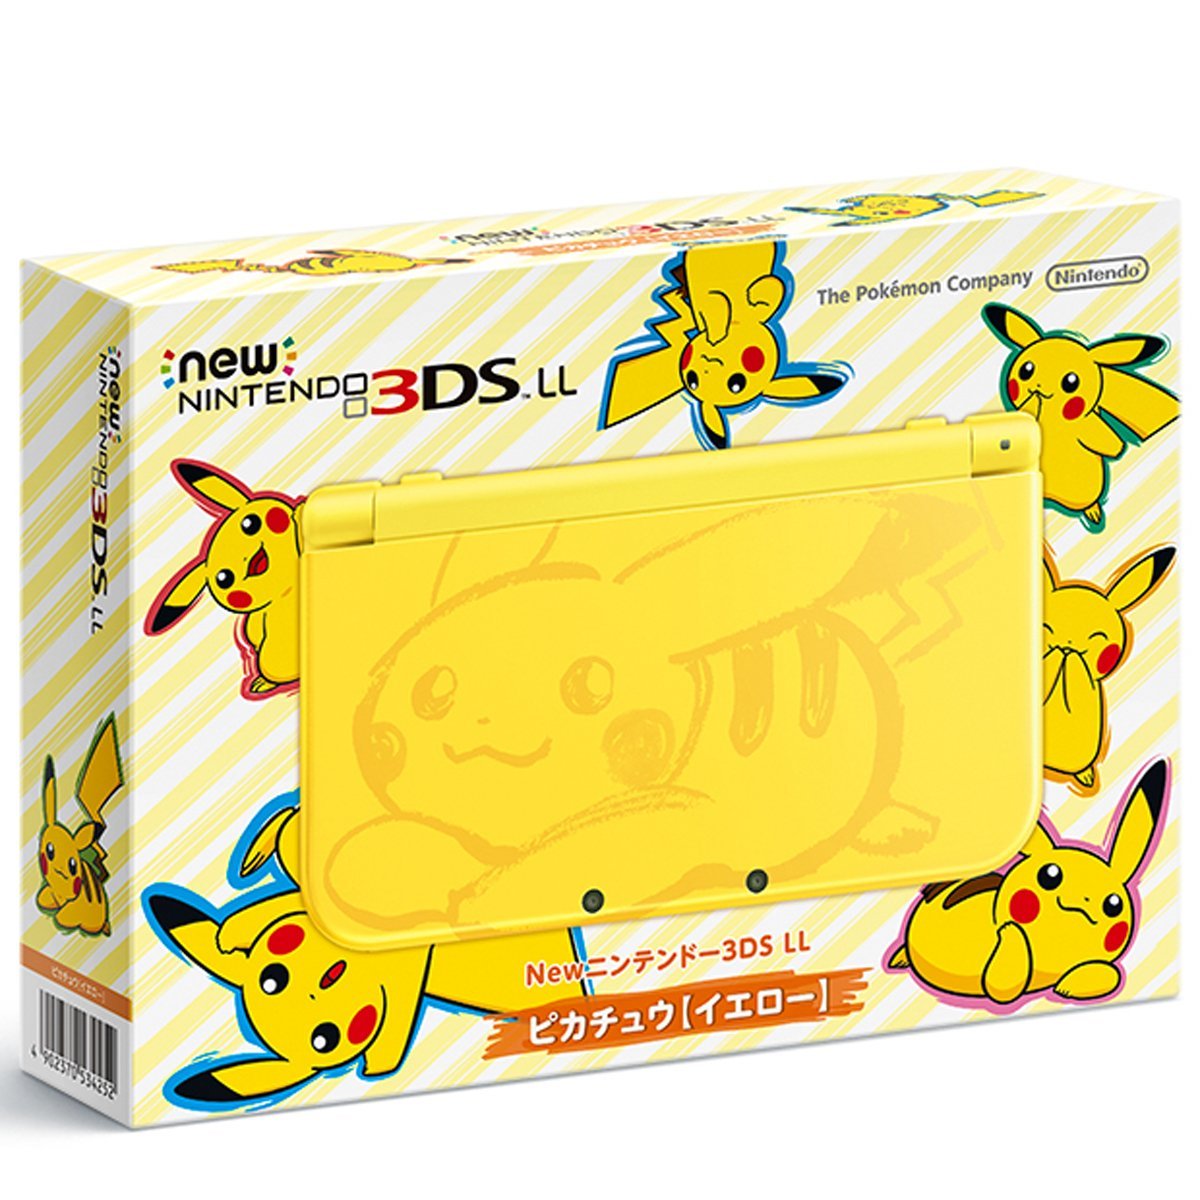 pikachu 3ds xl release date